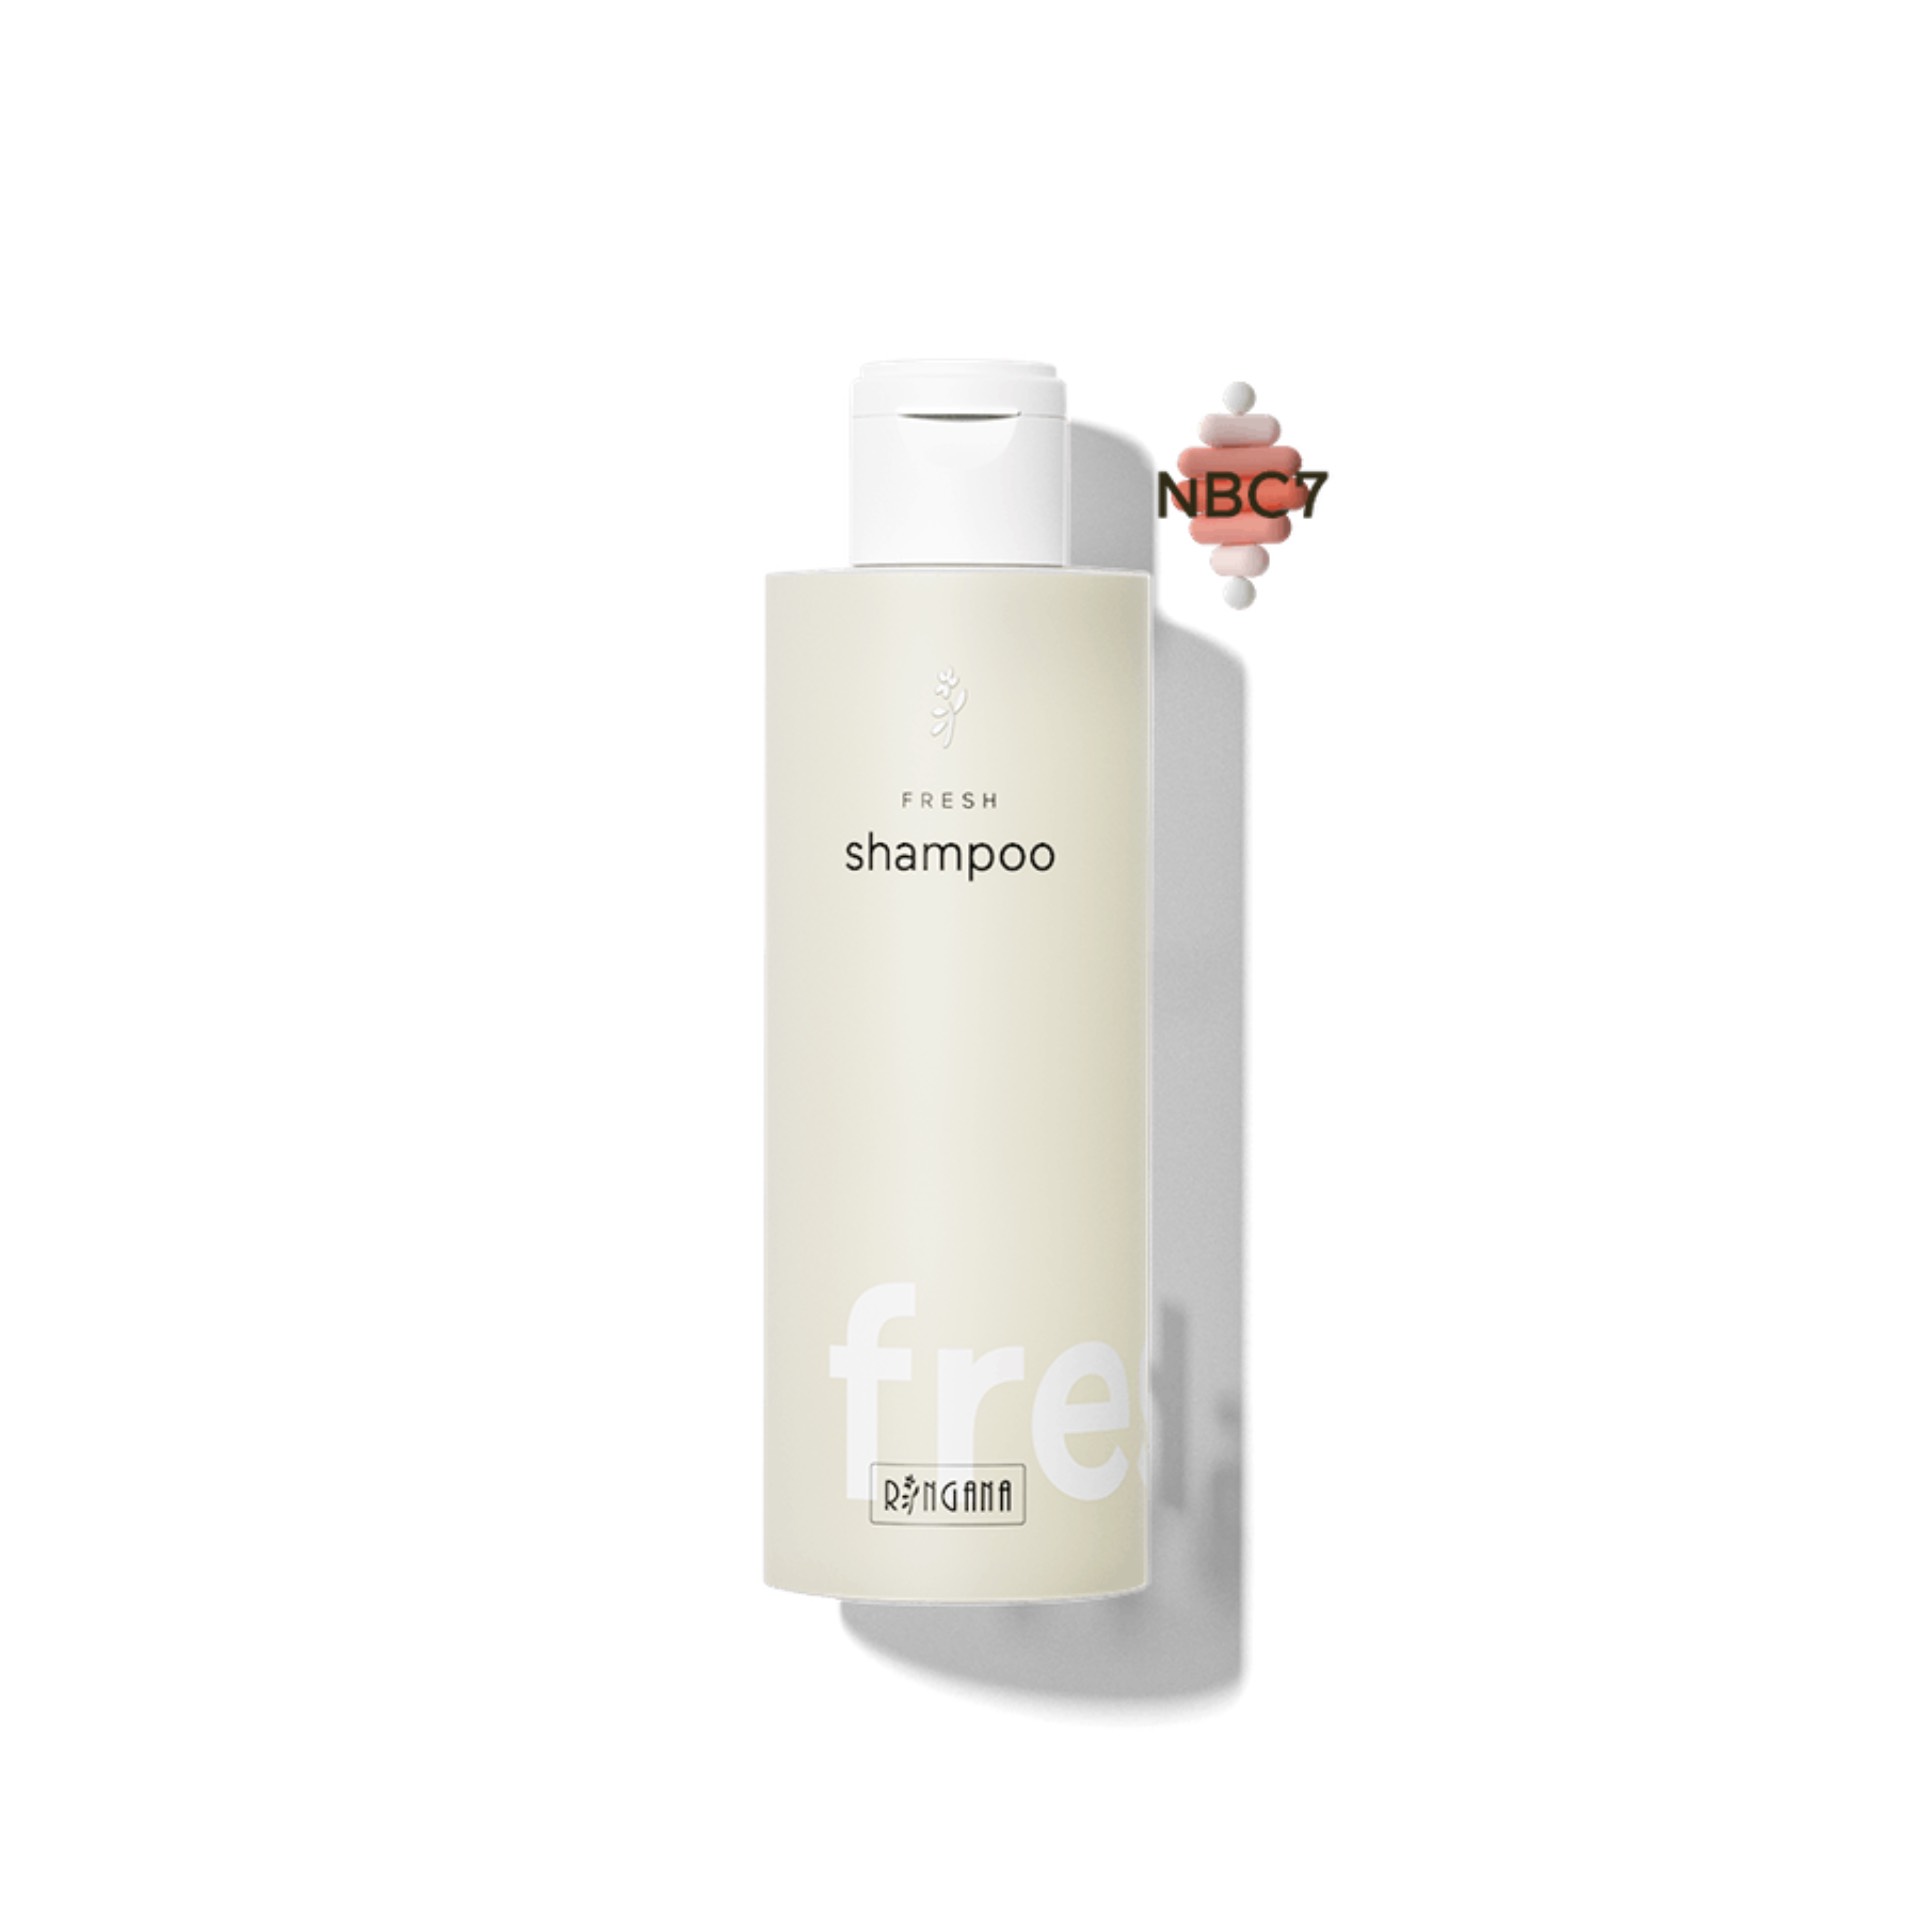 ringana-fresh-200ml-shampoo-NBC7-H